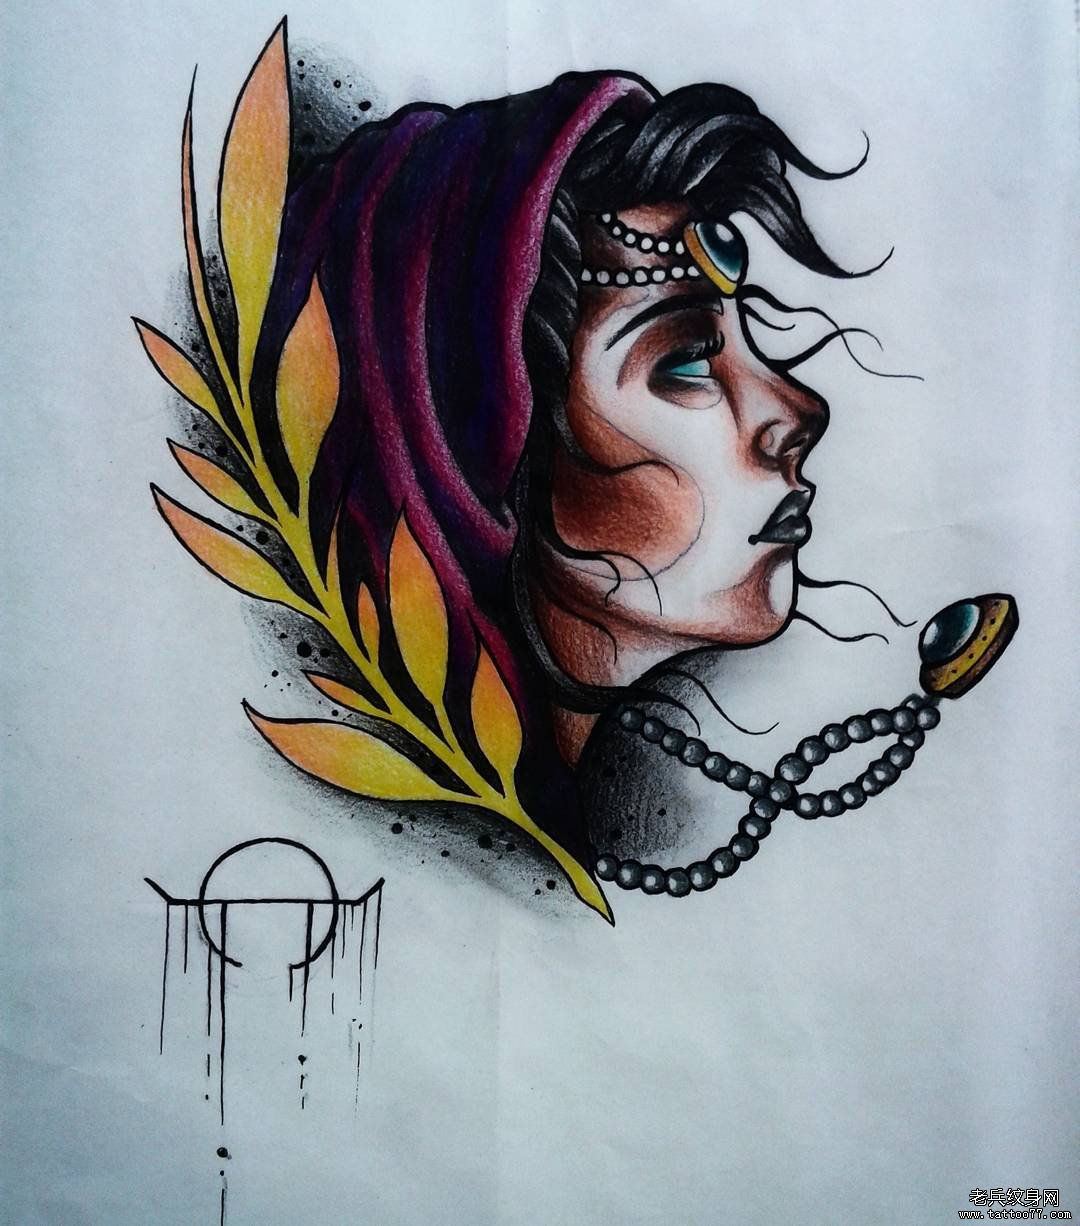 欧美女郎项链植物school纹身图案手稿